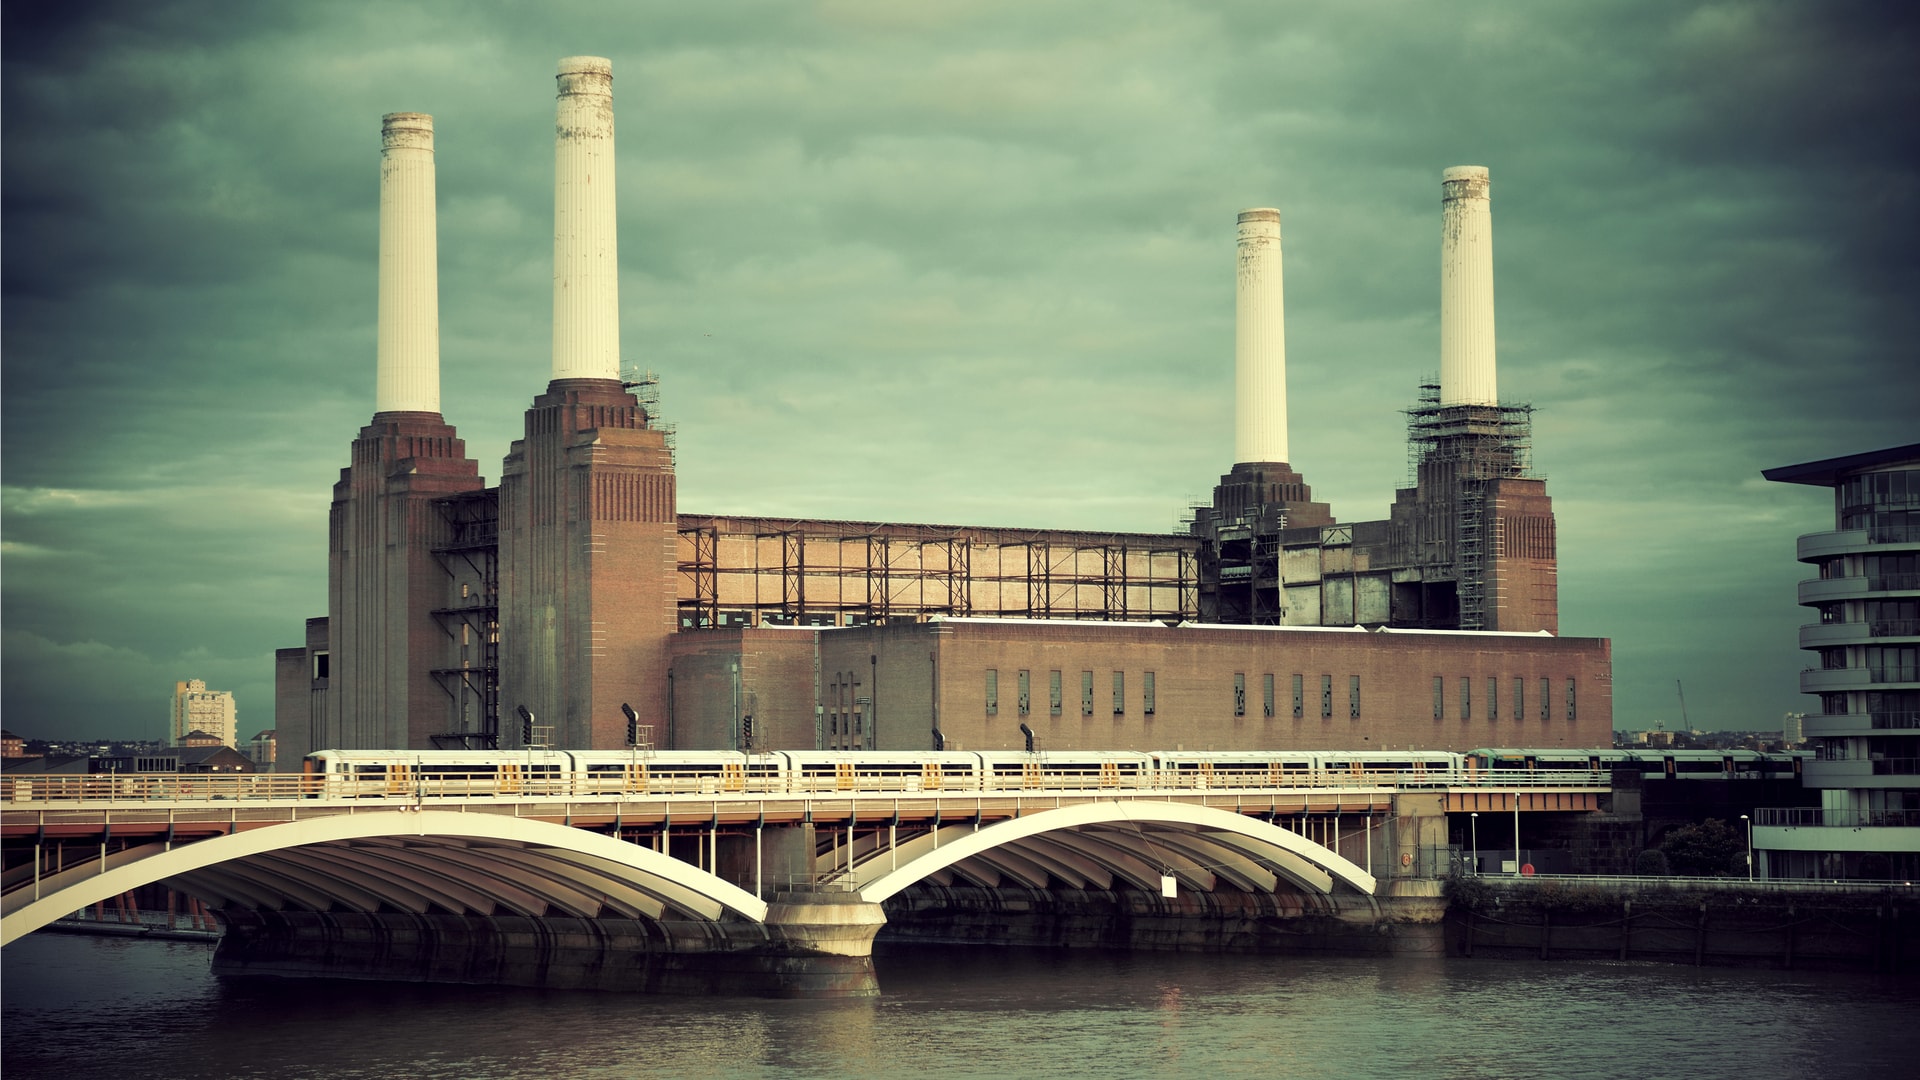 Elektrownia Battersea jest znana miłośnikom muzyki z okładki płyty Pink Floyd.